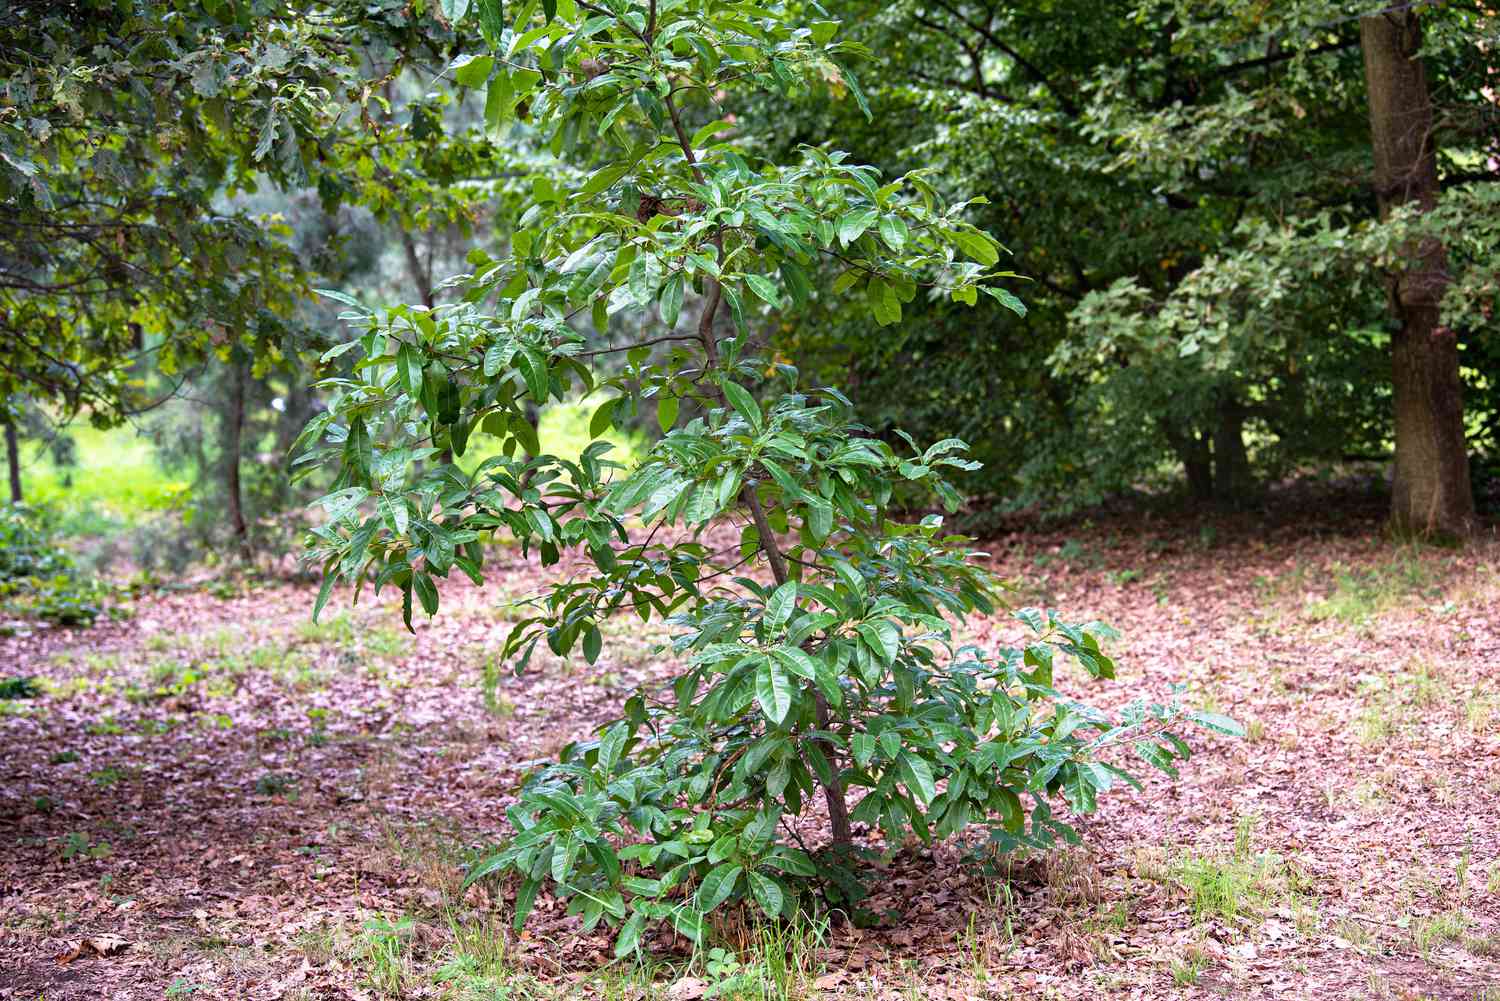 Schindeleiche mit dünnem Stamm und hellgrünen, wachsartigen Blättern inmitten eines Waldstücks